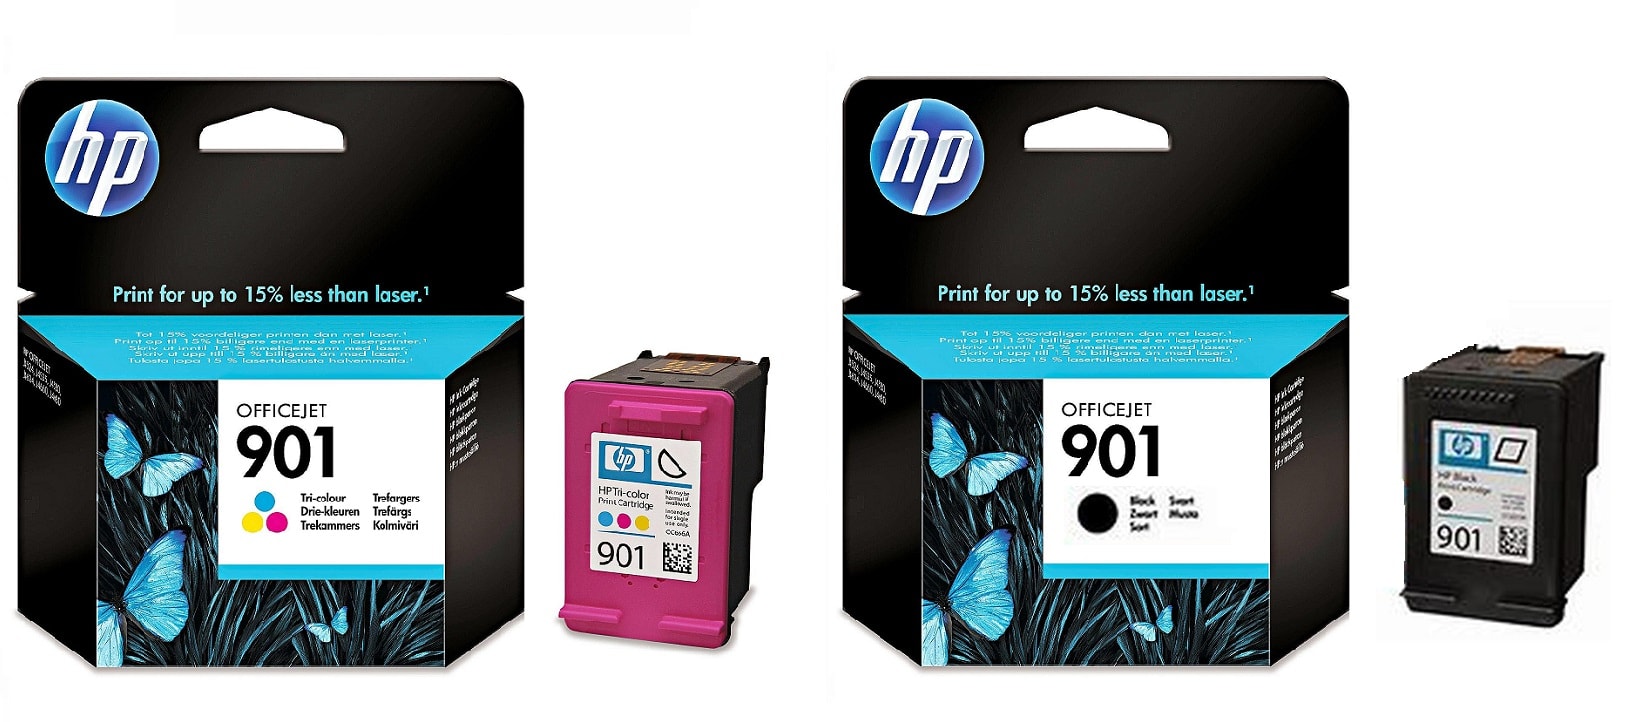 Картриджи hp 901 black hp 901 color для HP Officejet J4624. Купить комплект оригинальных картриджей.